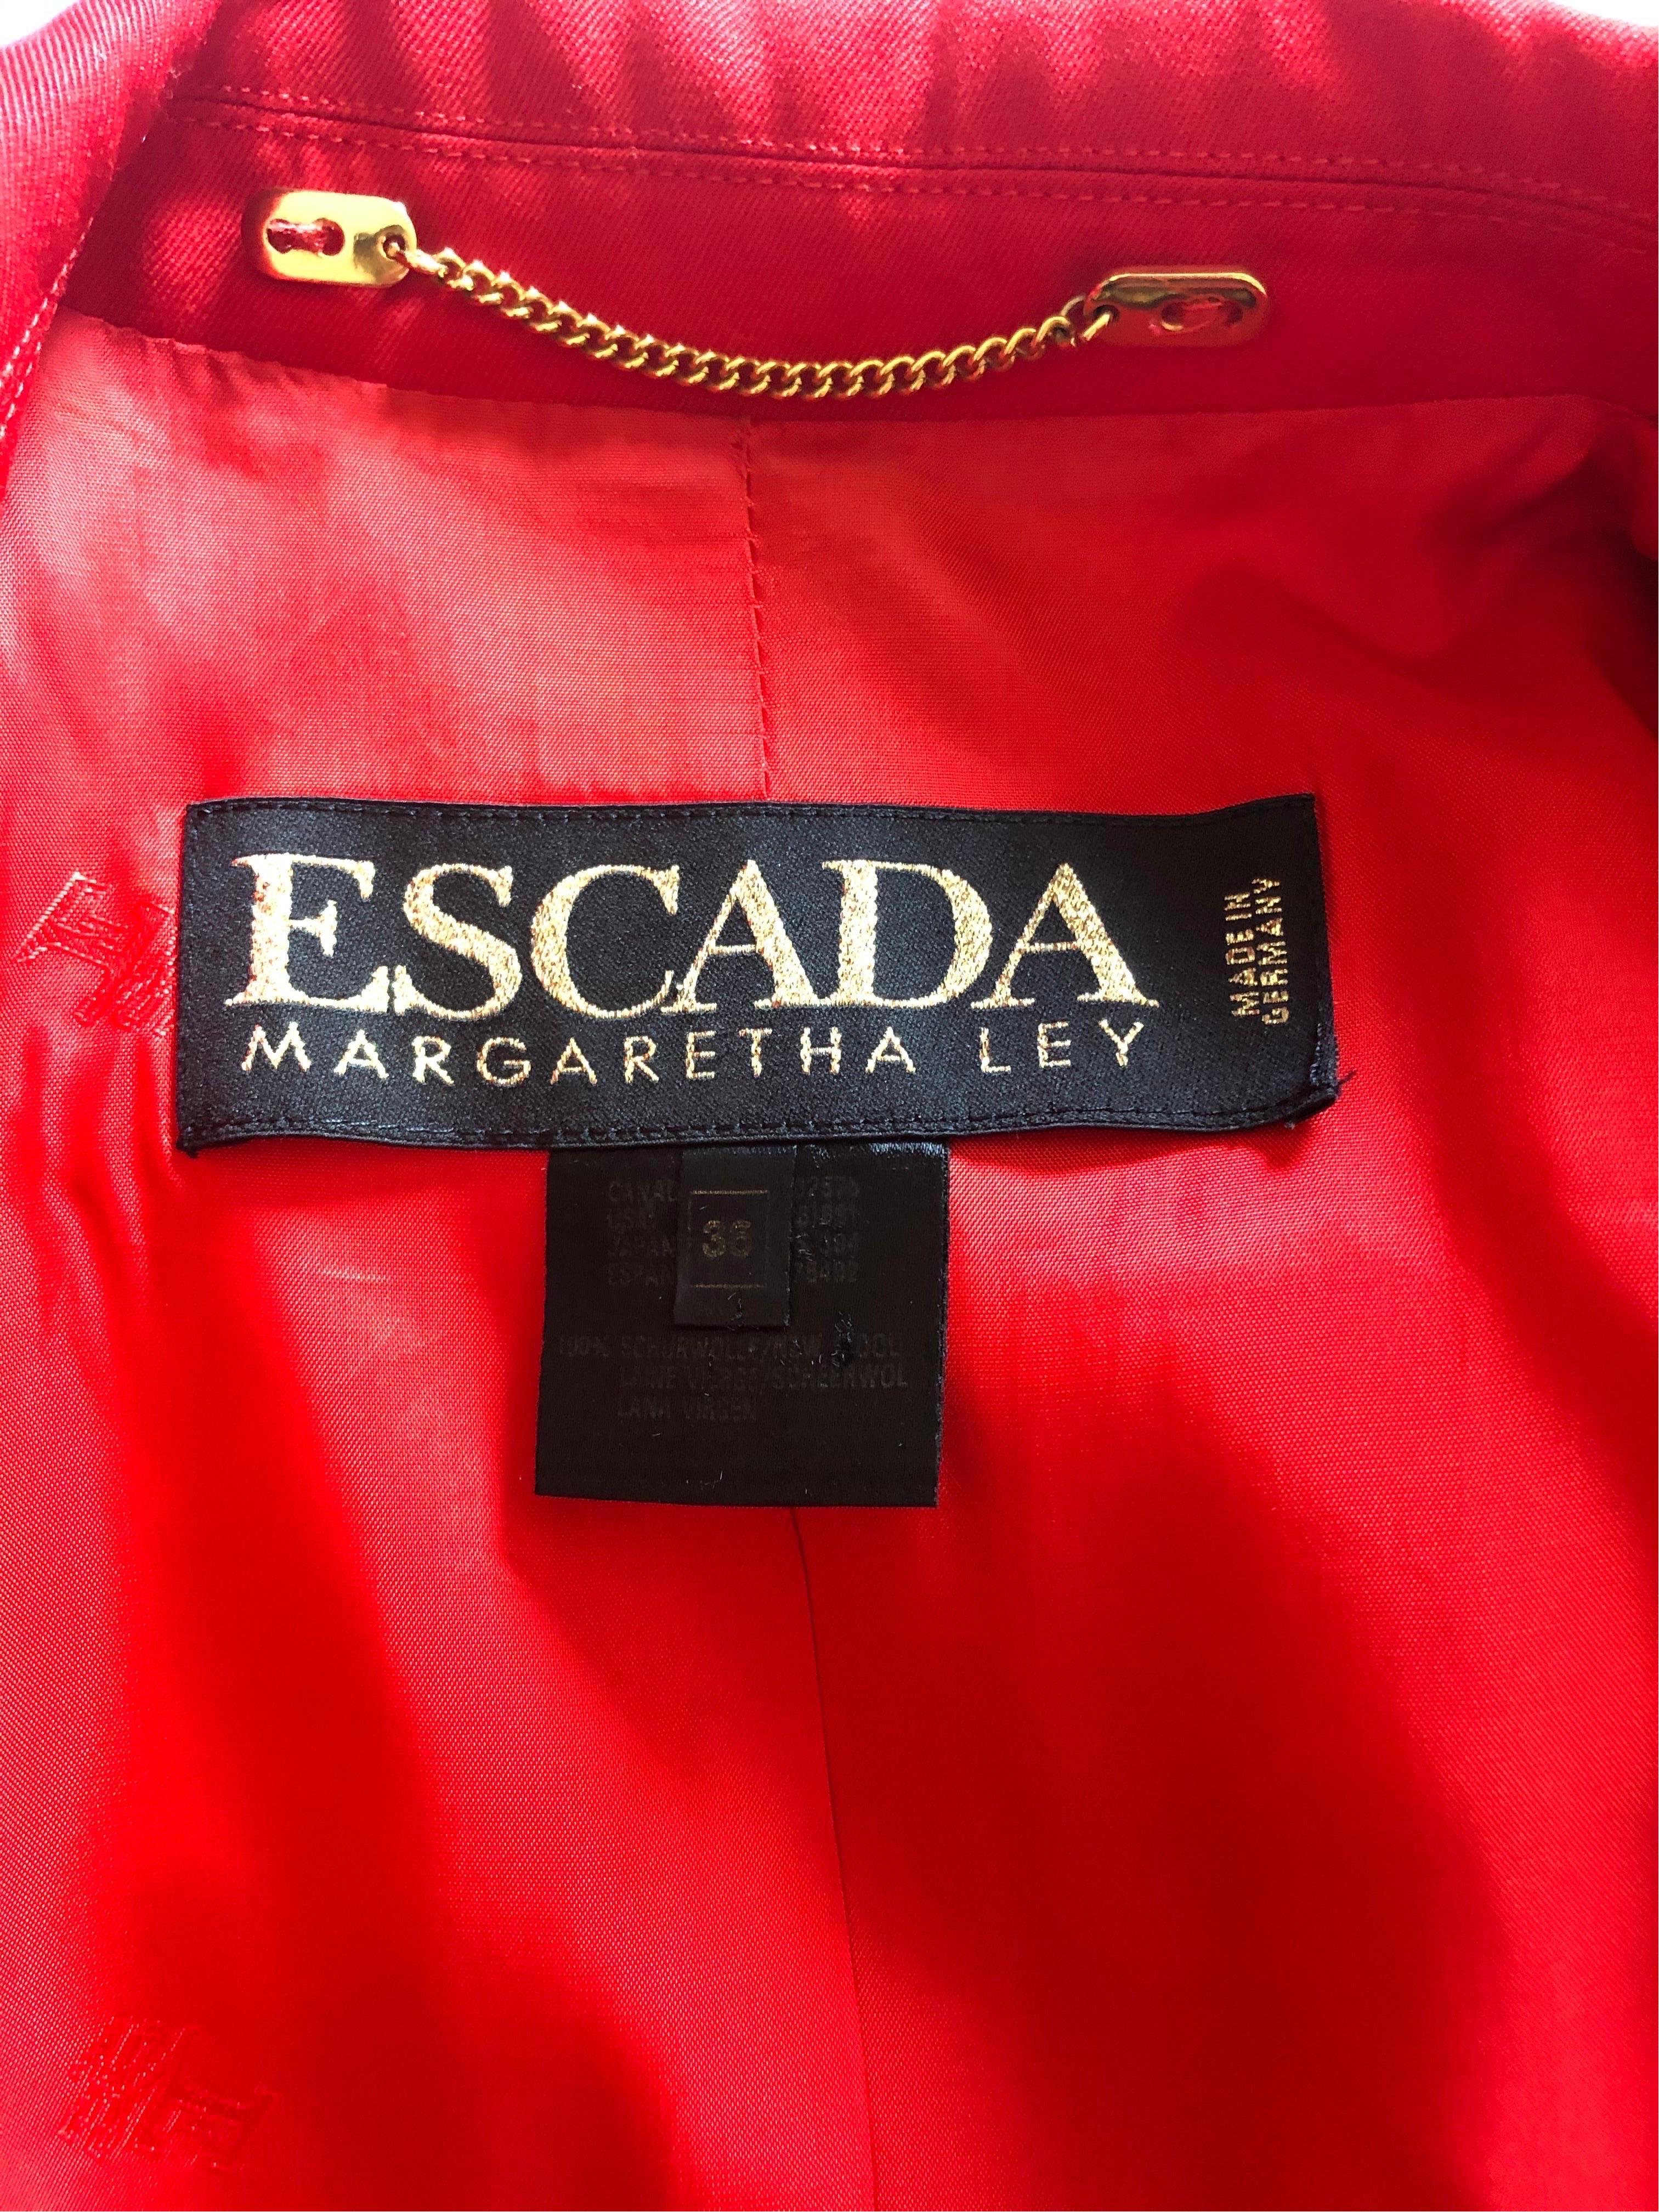 Red 1990s Vintage Escada by Margaretha Ley blazer For Sale